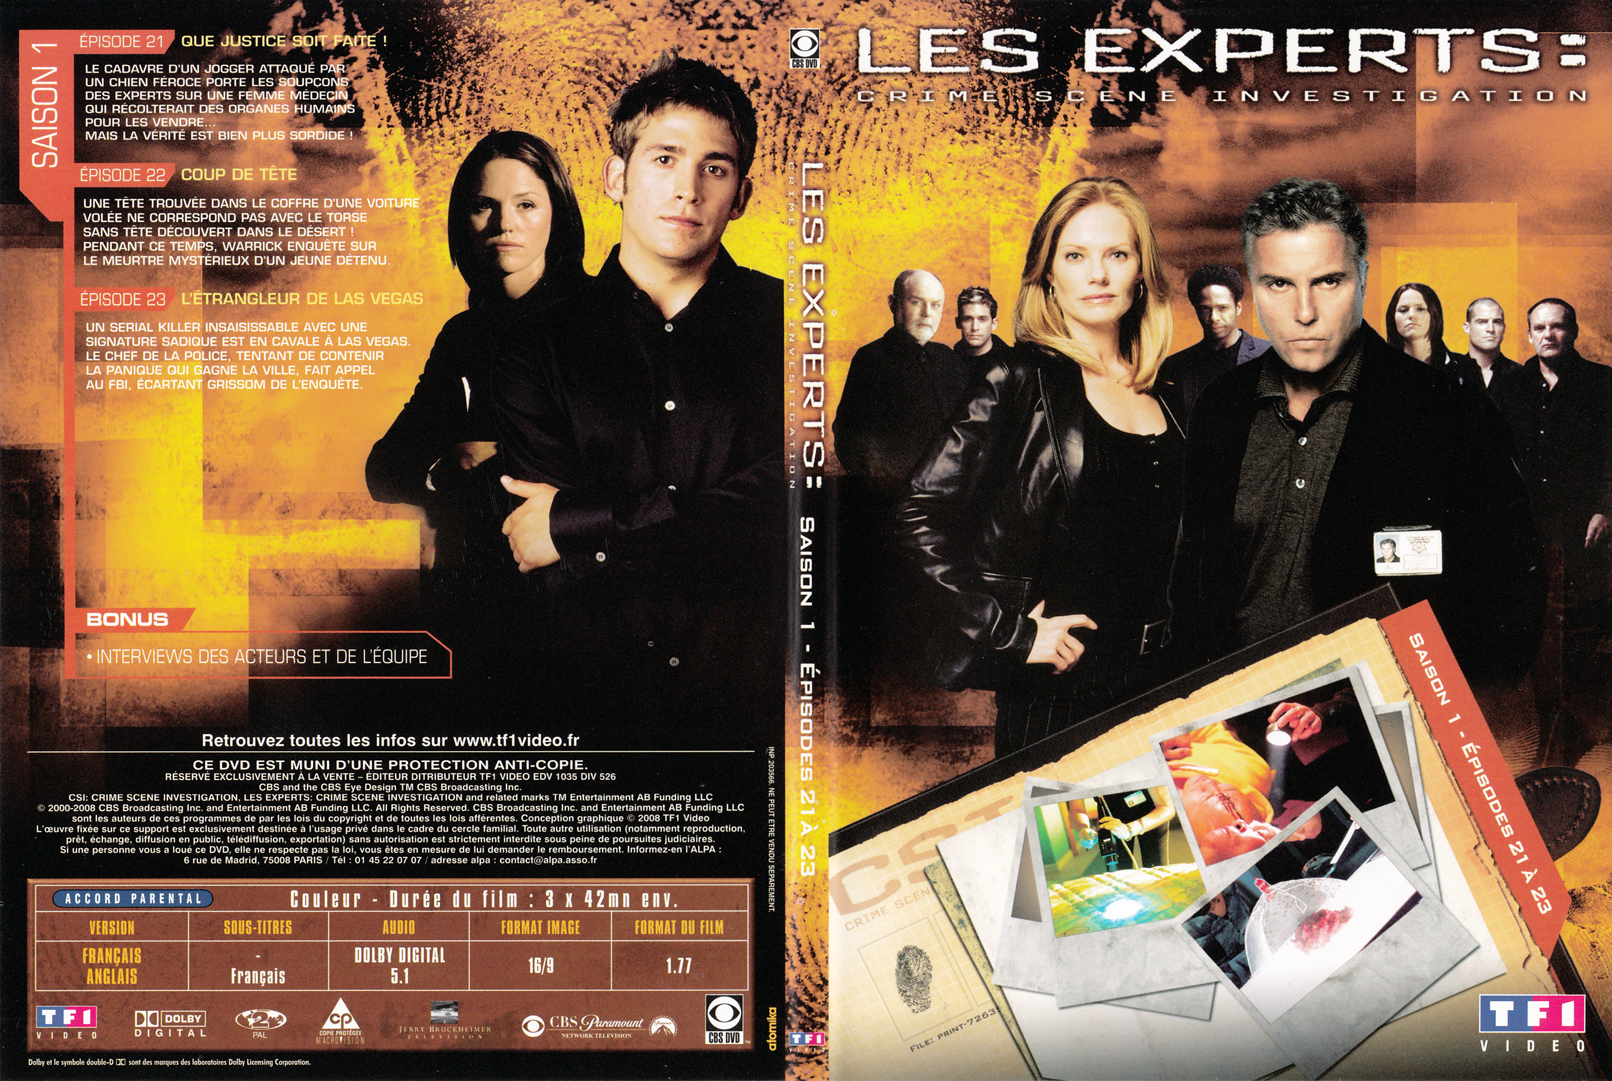 Jaquette DVD Les experts las vegas Saison 01 DVD 06 - SLIM